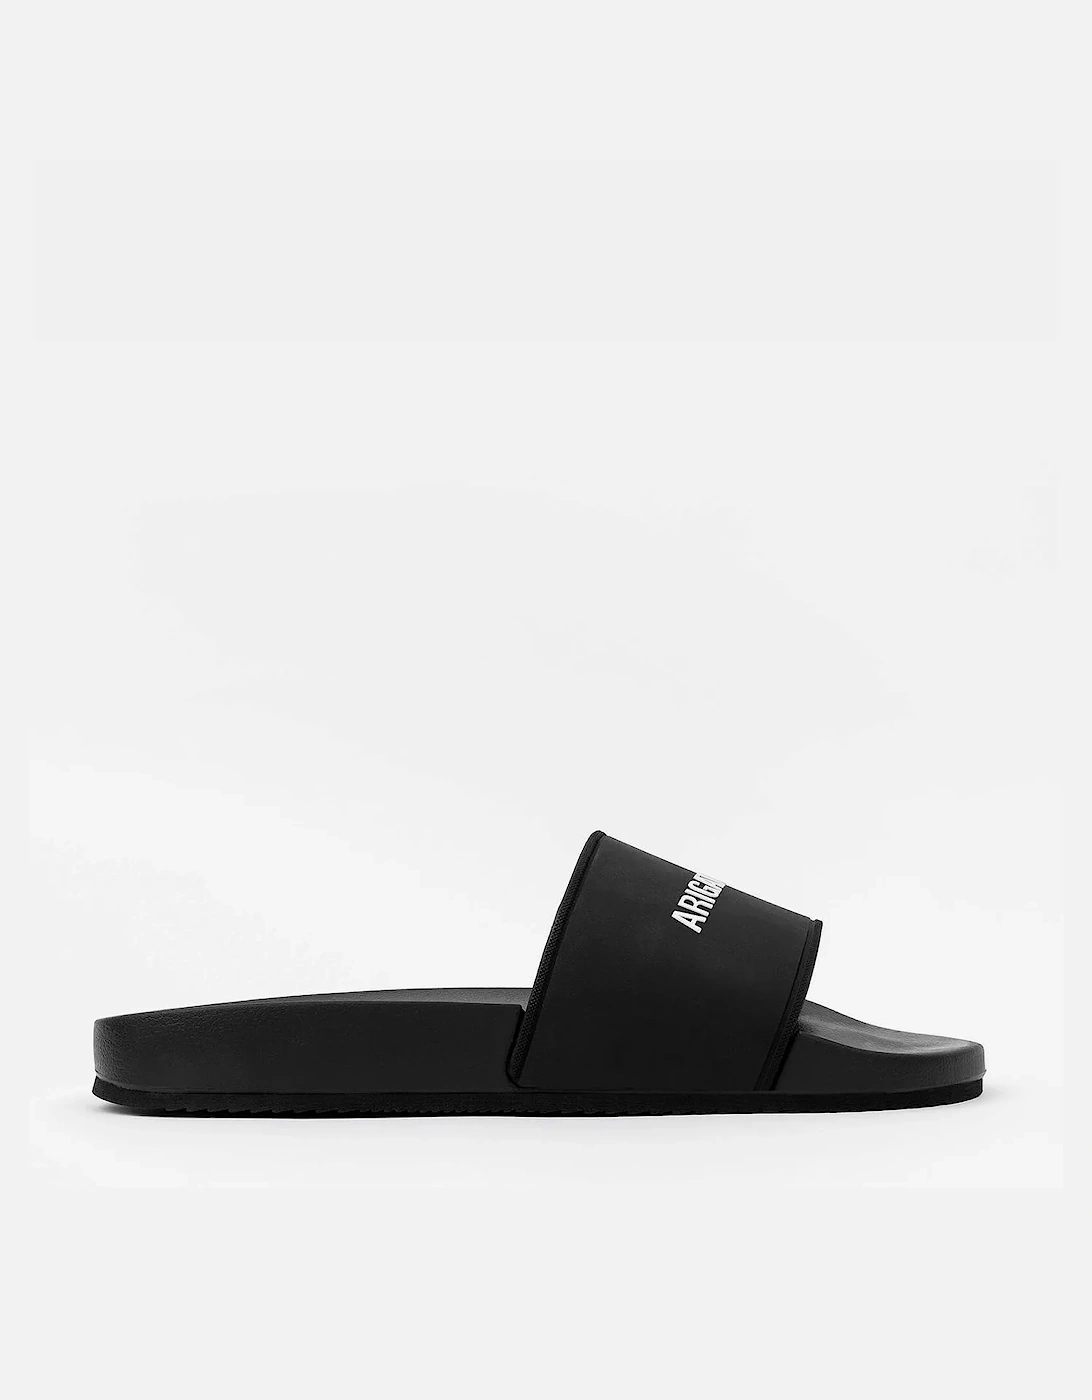 Women's Slide Sandals - Black - - Home - Women's Slide Sandals - Black